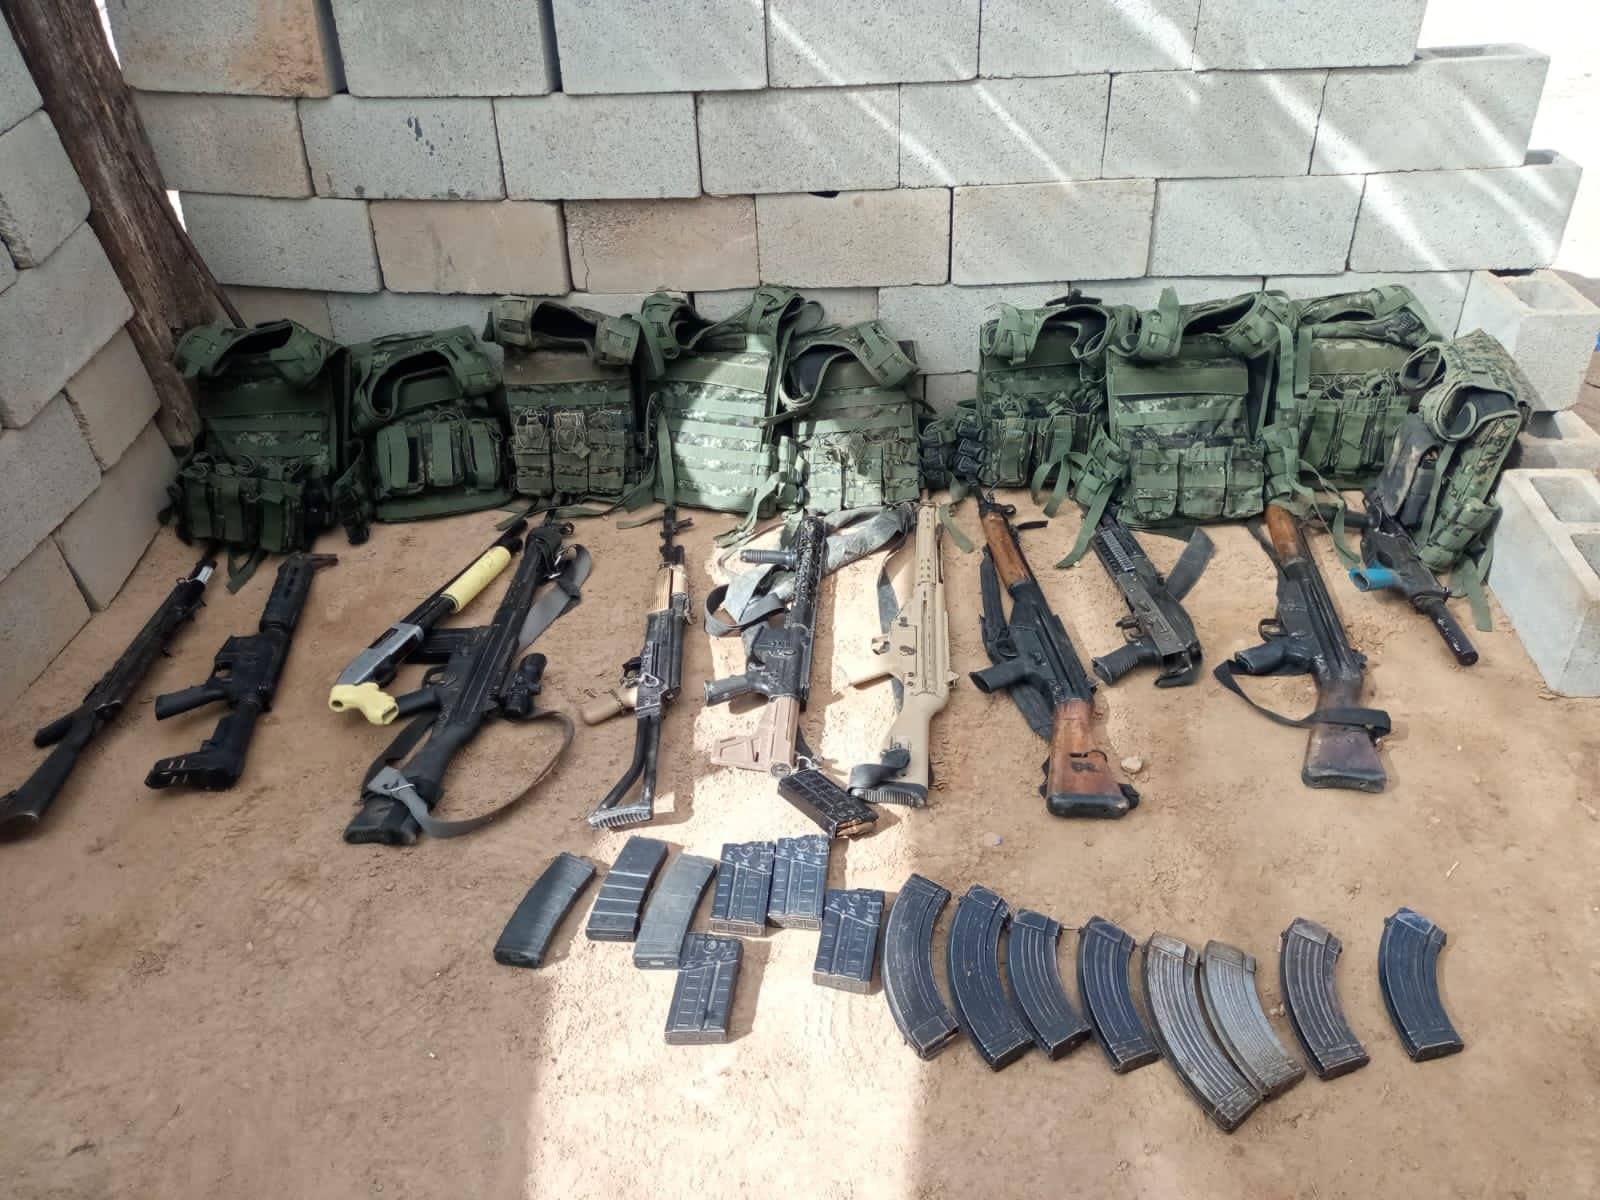 Tras llegada de autoridades fueron detenidos 14 presuntos sicarios con armas largas en Sonora